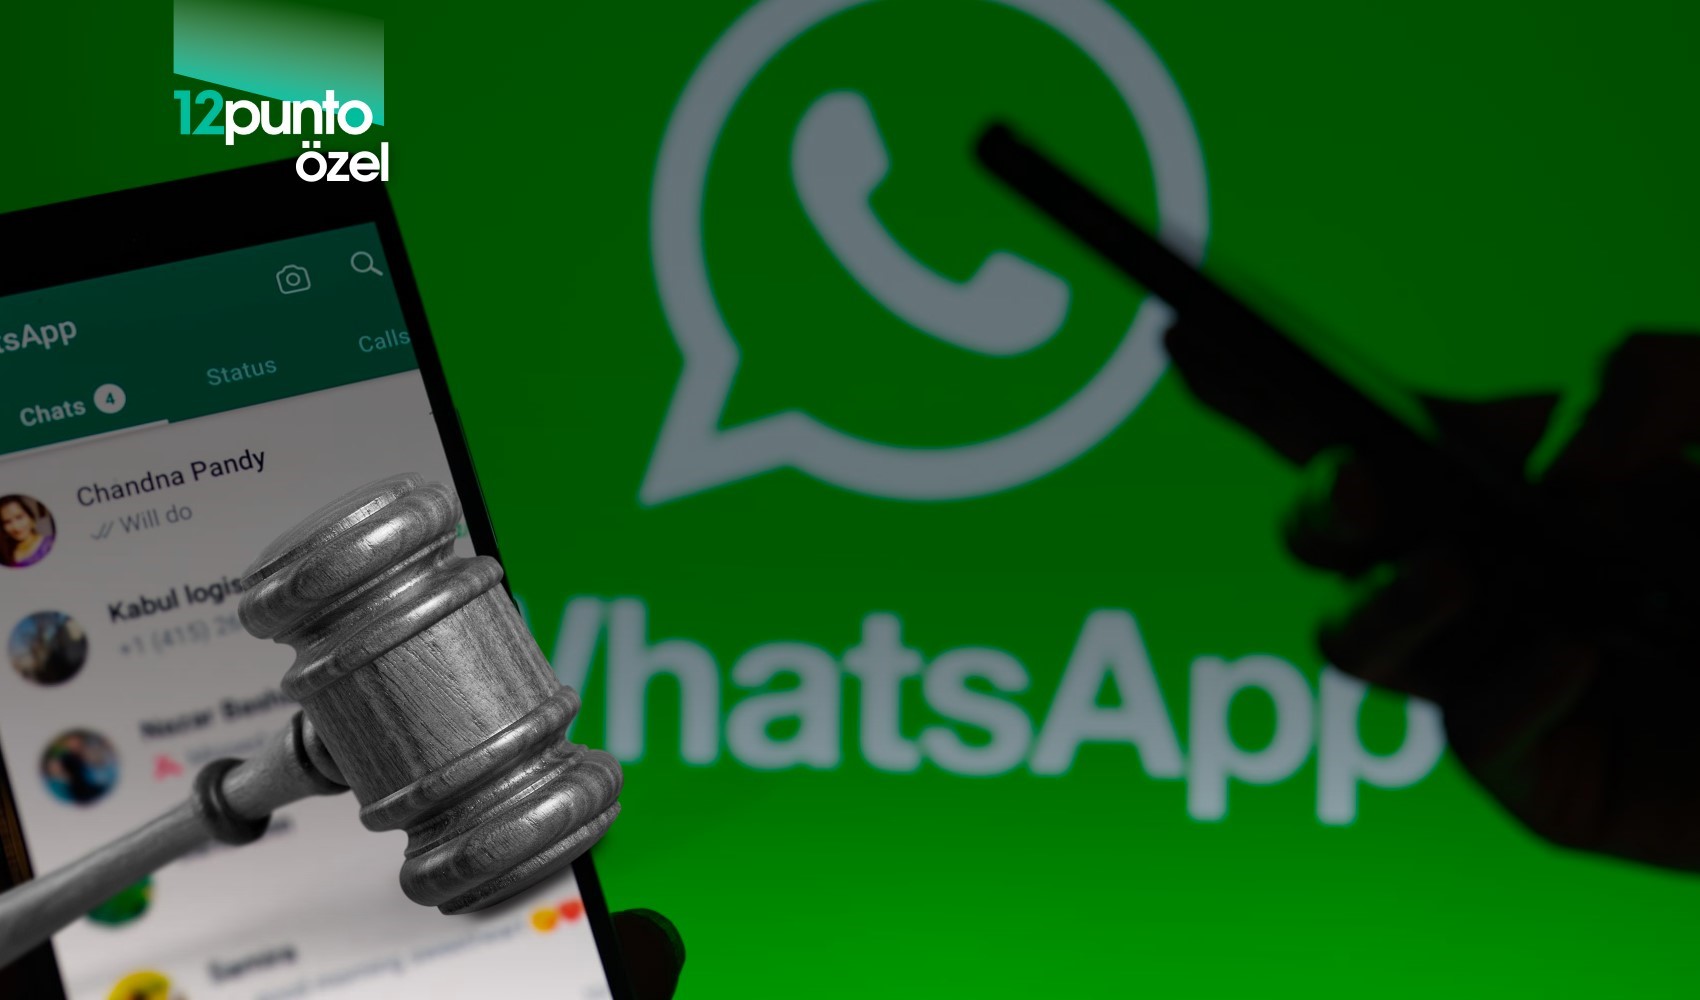 Mesaj atmadan önce iki kez düşünün: Boşanma davalarında WhatsApp yazışmaları başınızı yakabilir!